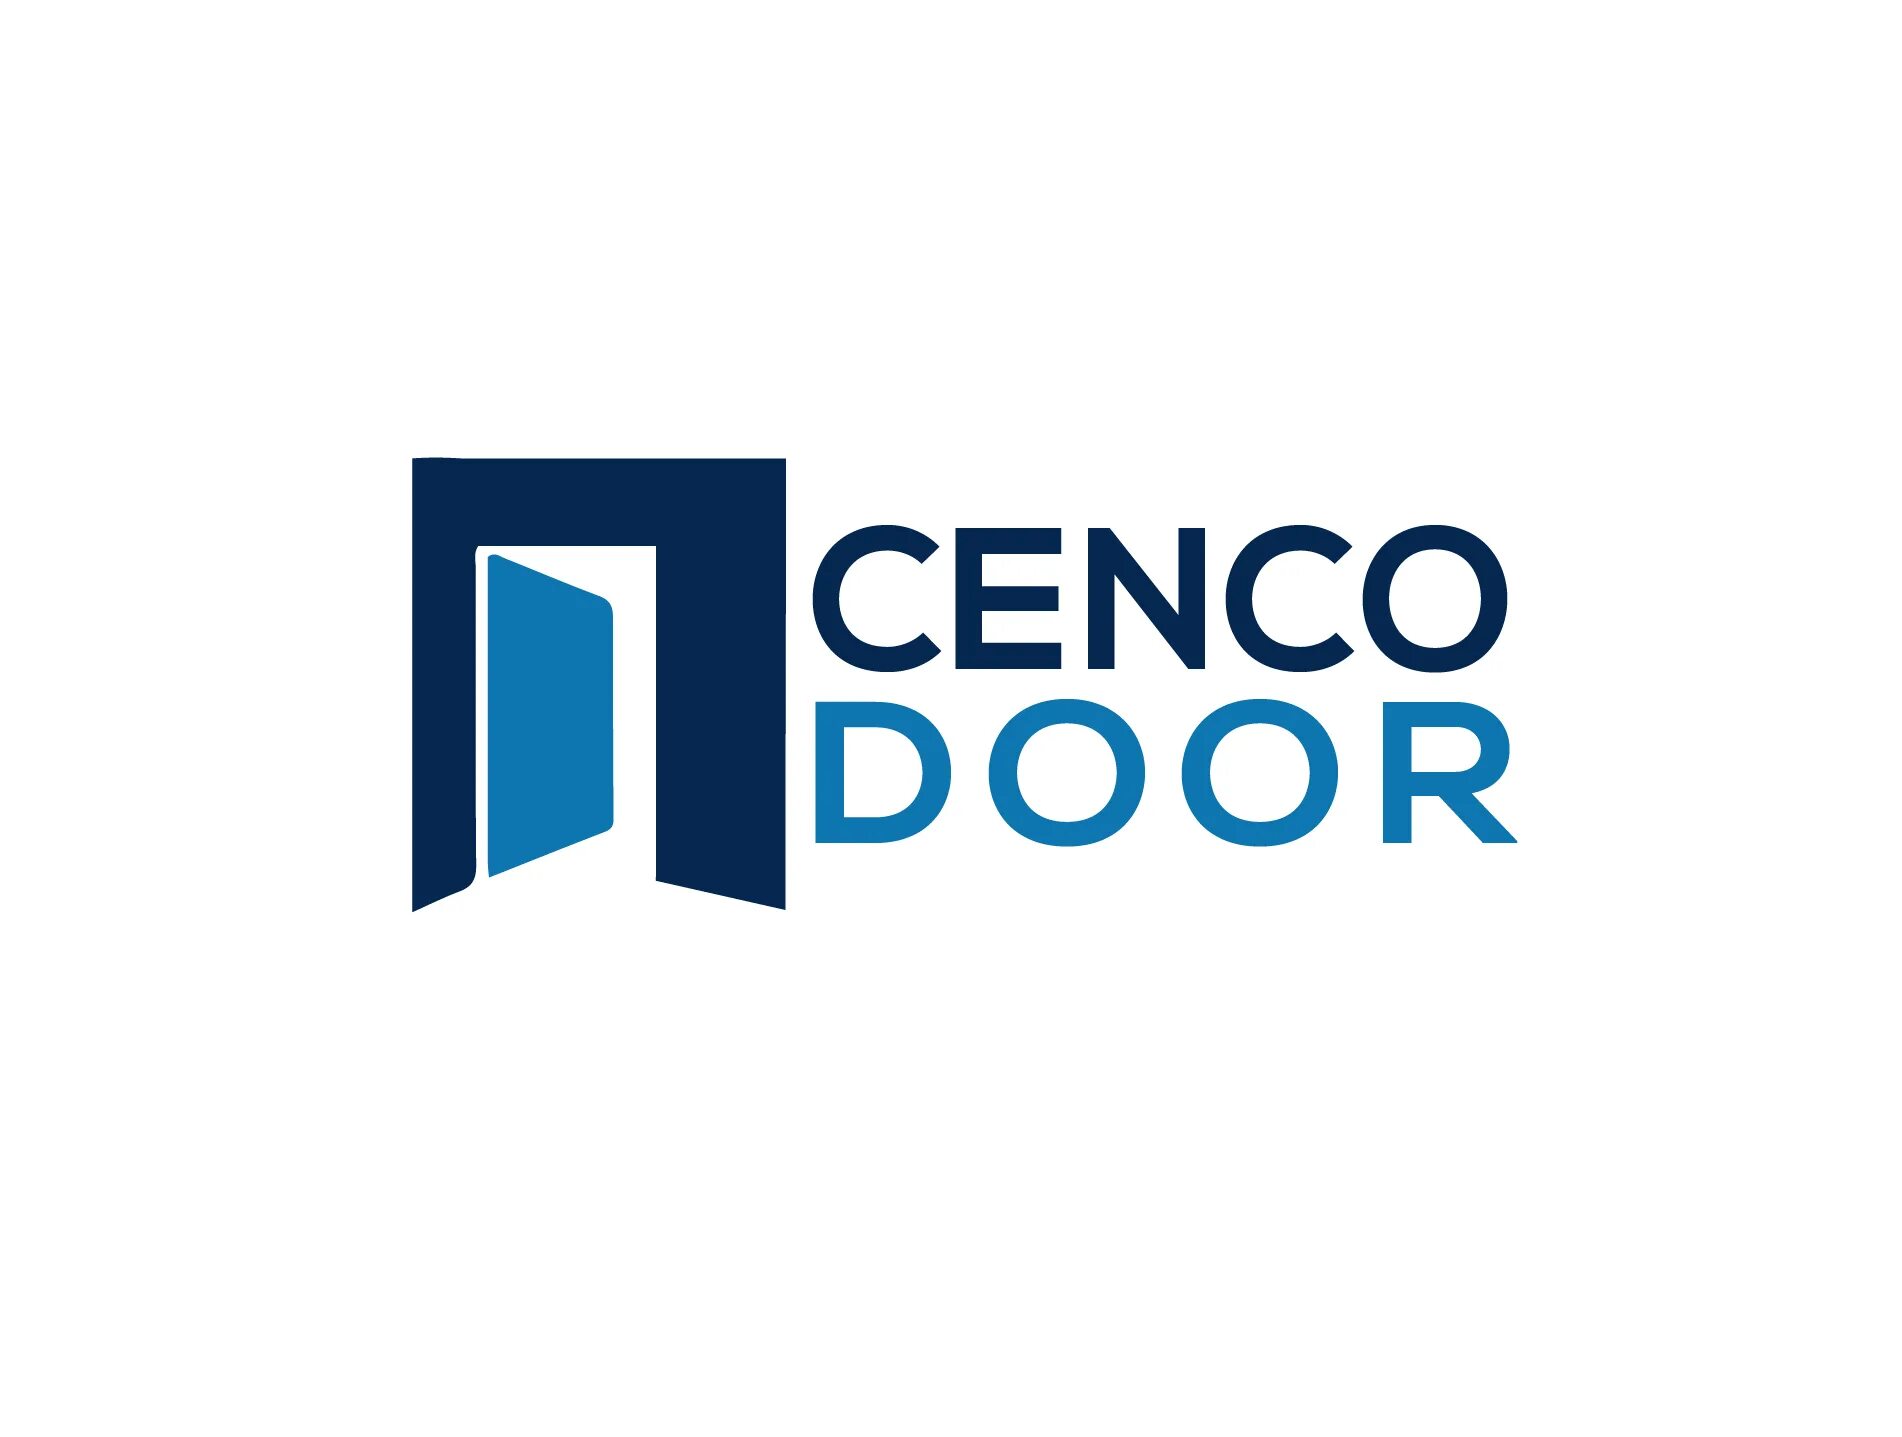 Двери лого. The Doors логотип. Двери logo. Окно Design logo. City Doors двери логотип.